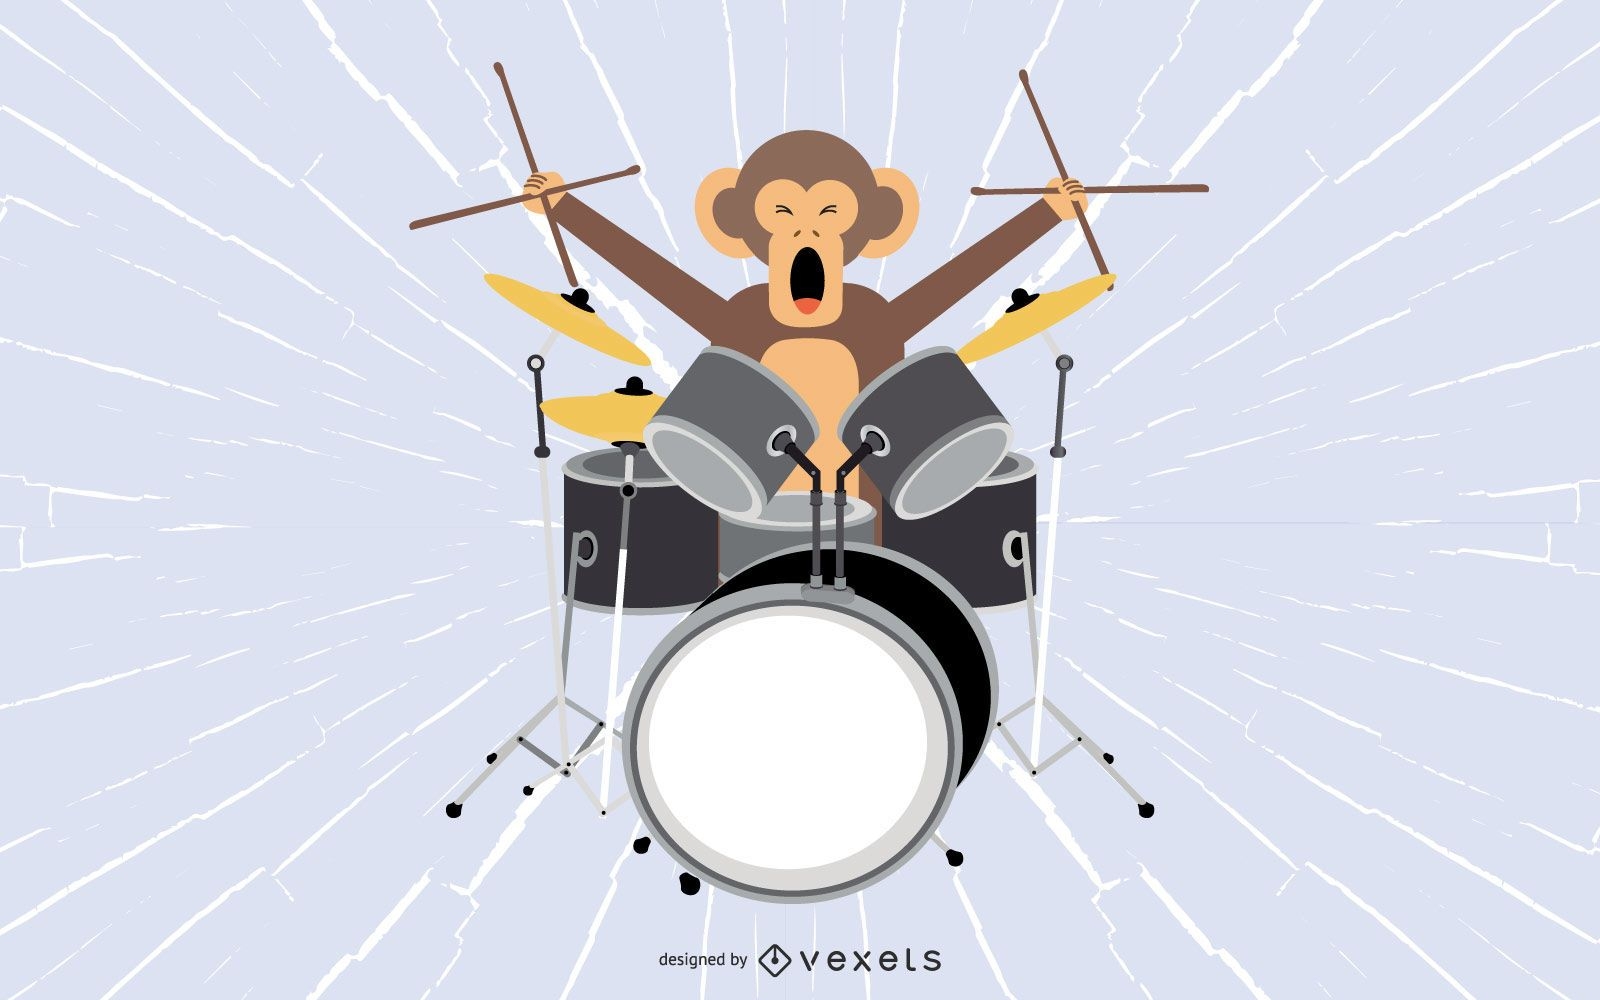 Macaco tambor